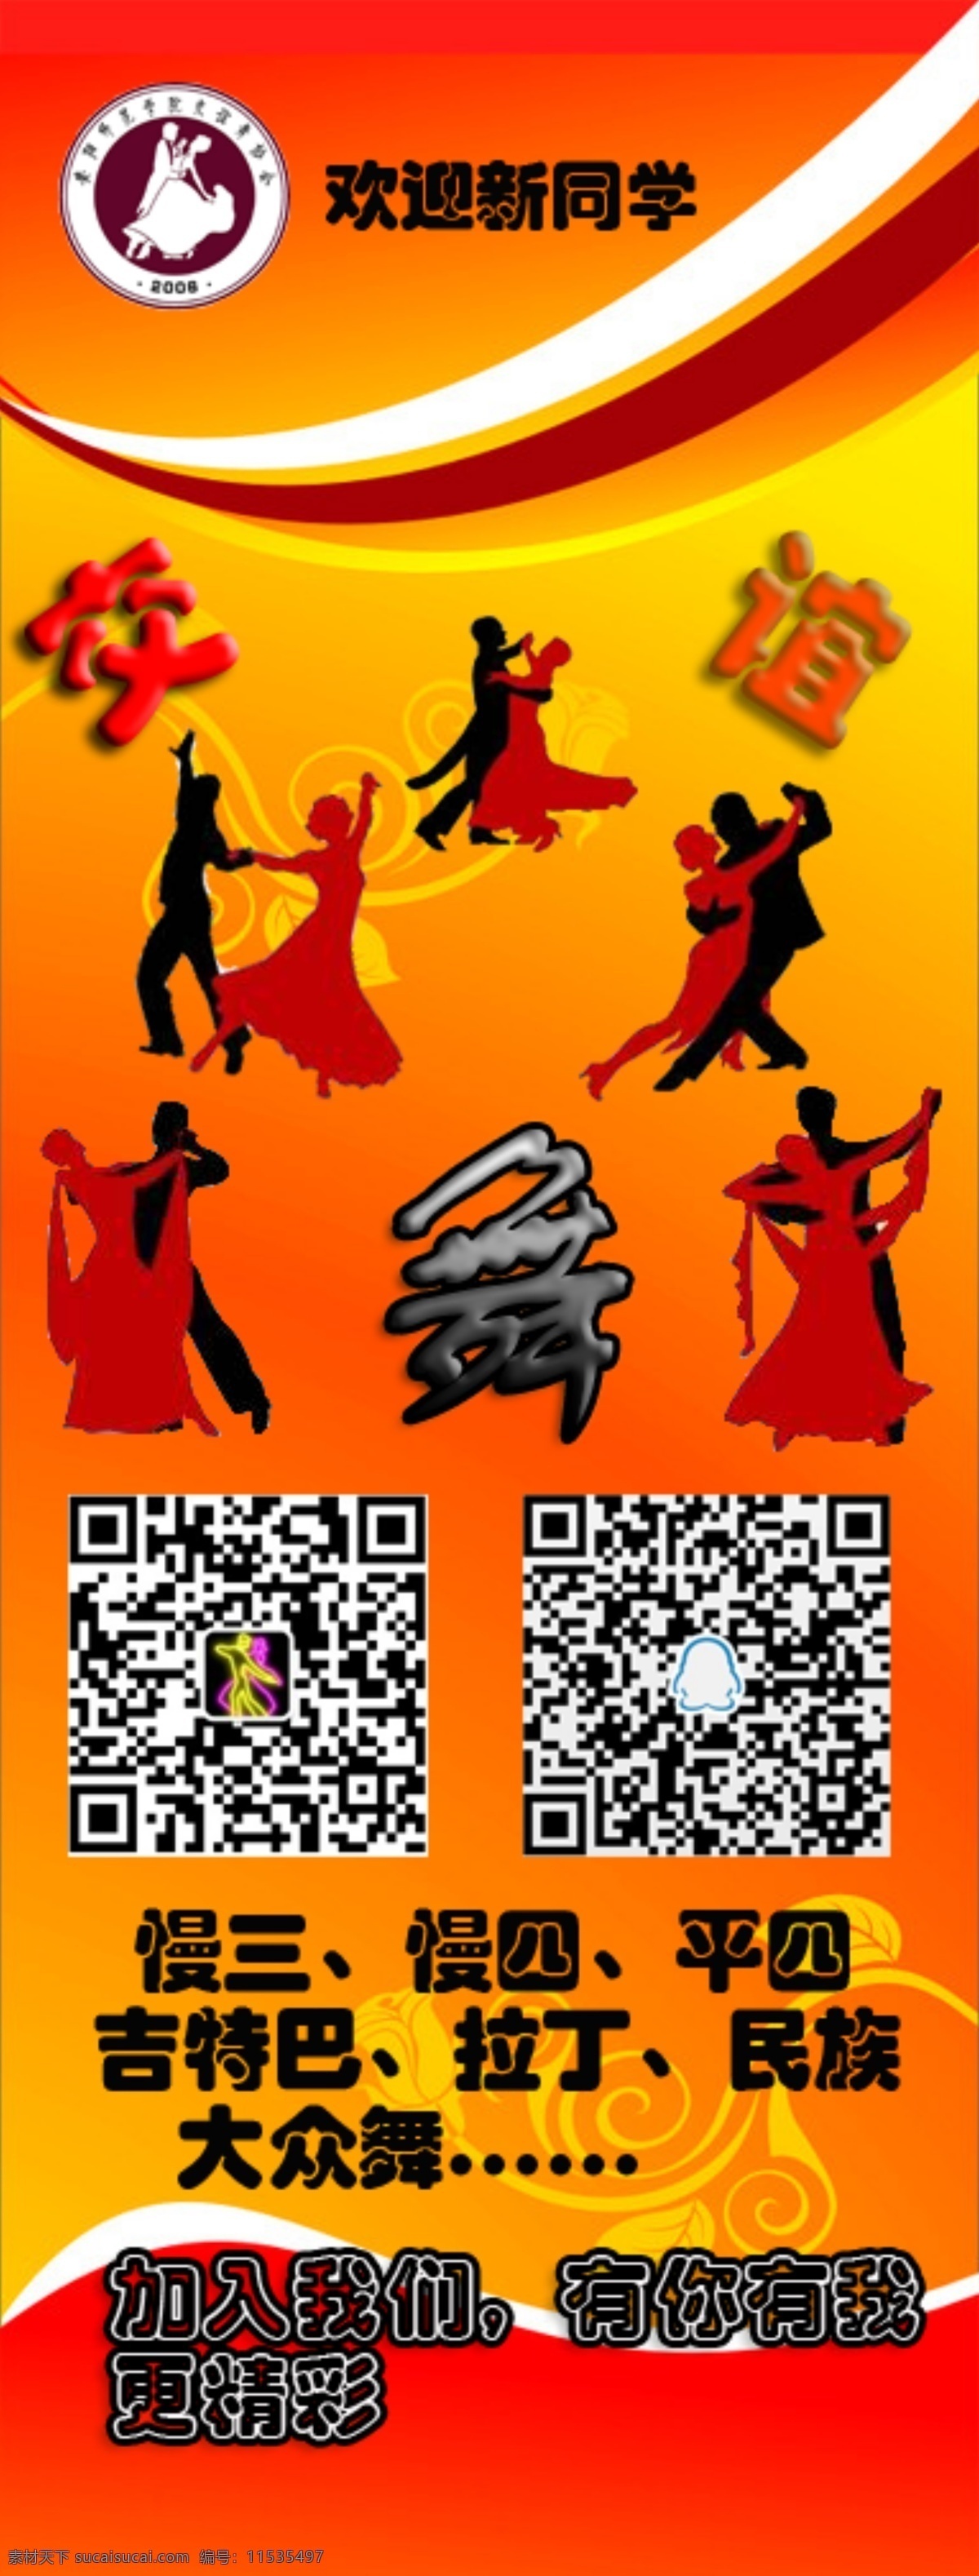 安 师 交谊舞 协会 海报 展架海报 舞蹈 舞蹈海报 宣传海报